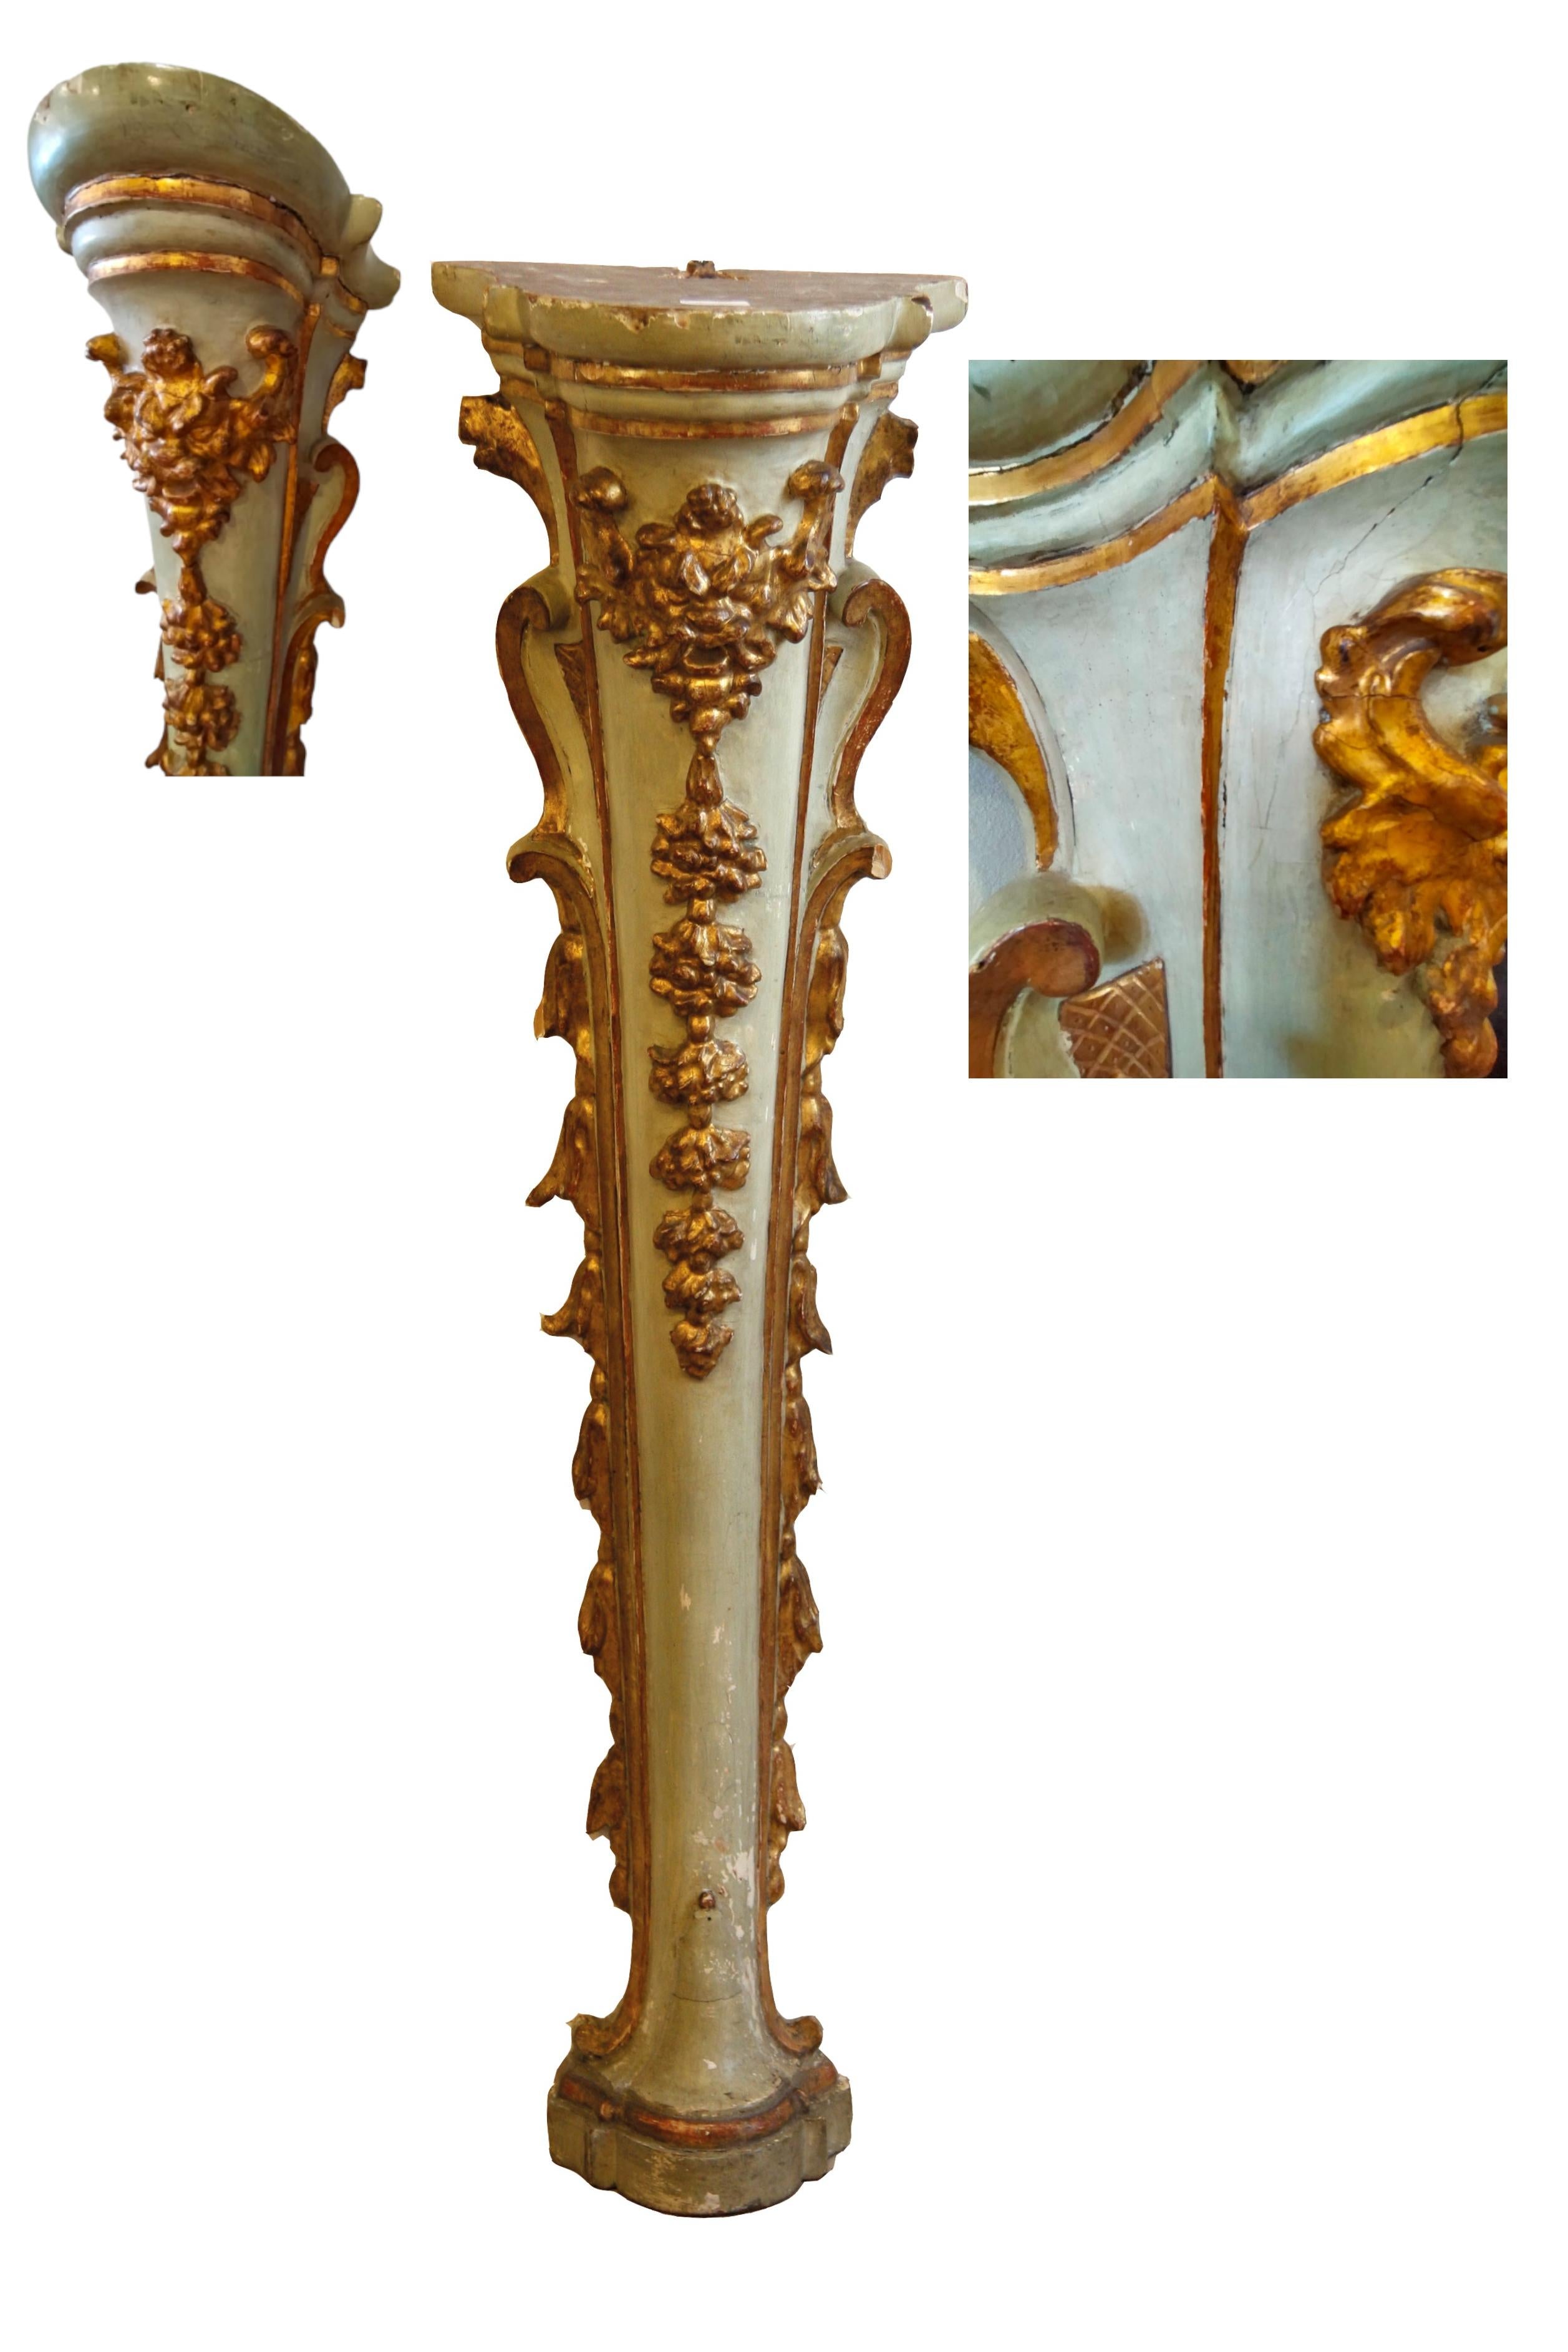 Elegantes Paar Louis XV-Wandsäulen.

Lackiertes und vergoldetes Holz mit floralen Schnitzereien und zentraler Maske. Die lackierten Teile in einem ins Hellblau tendierenden Grau in Kombination mit den geschnitzten und vergoldeten Teilen tragen dazu